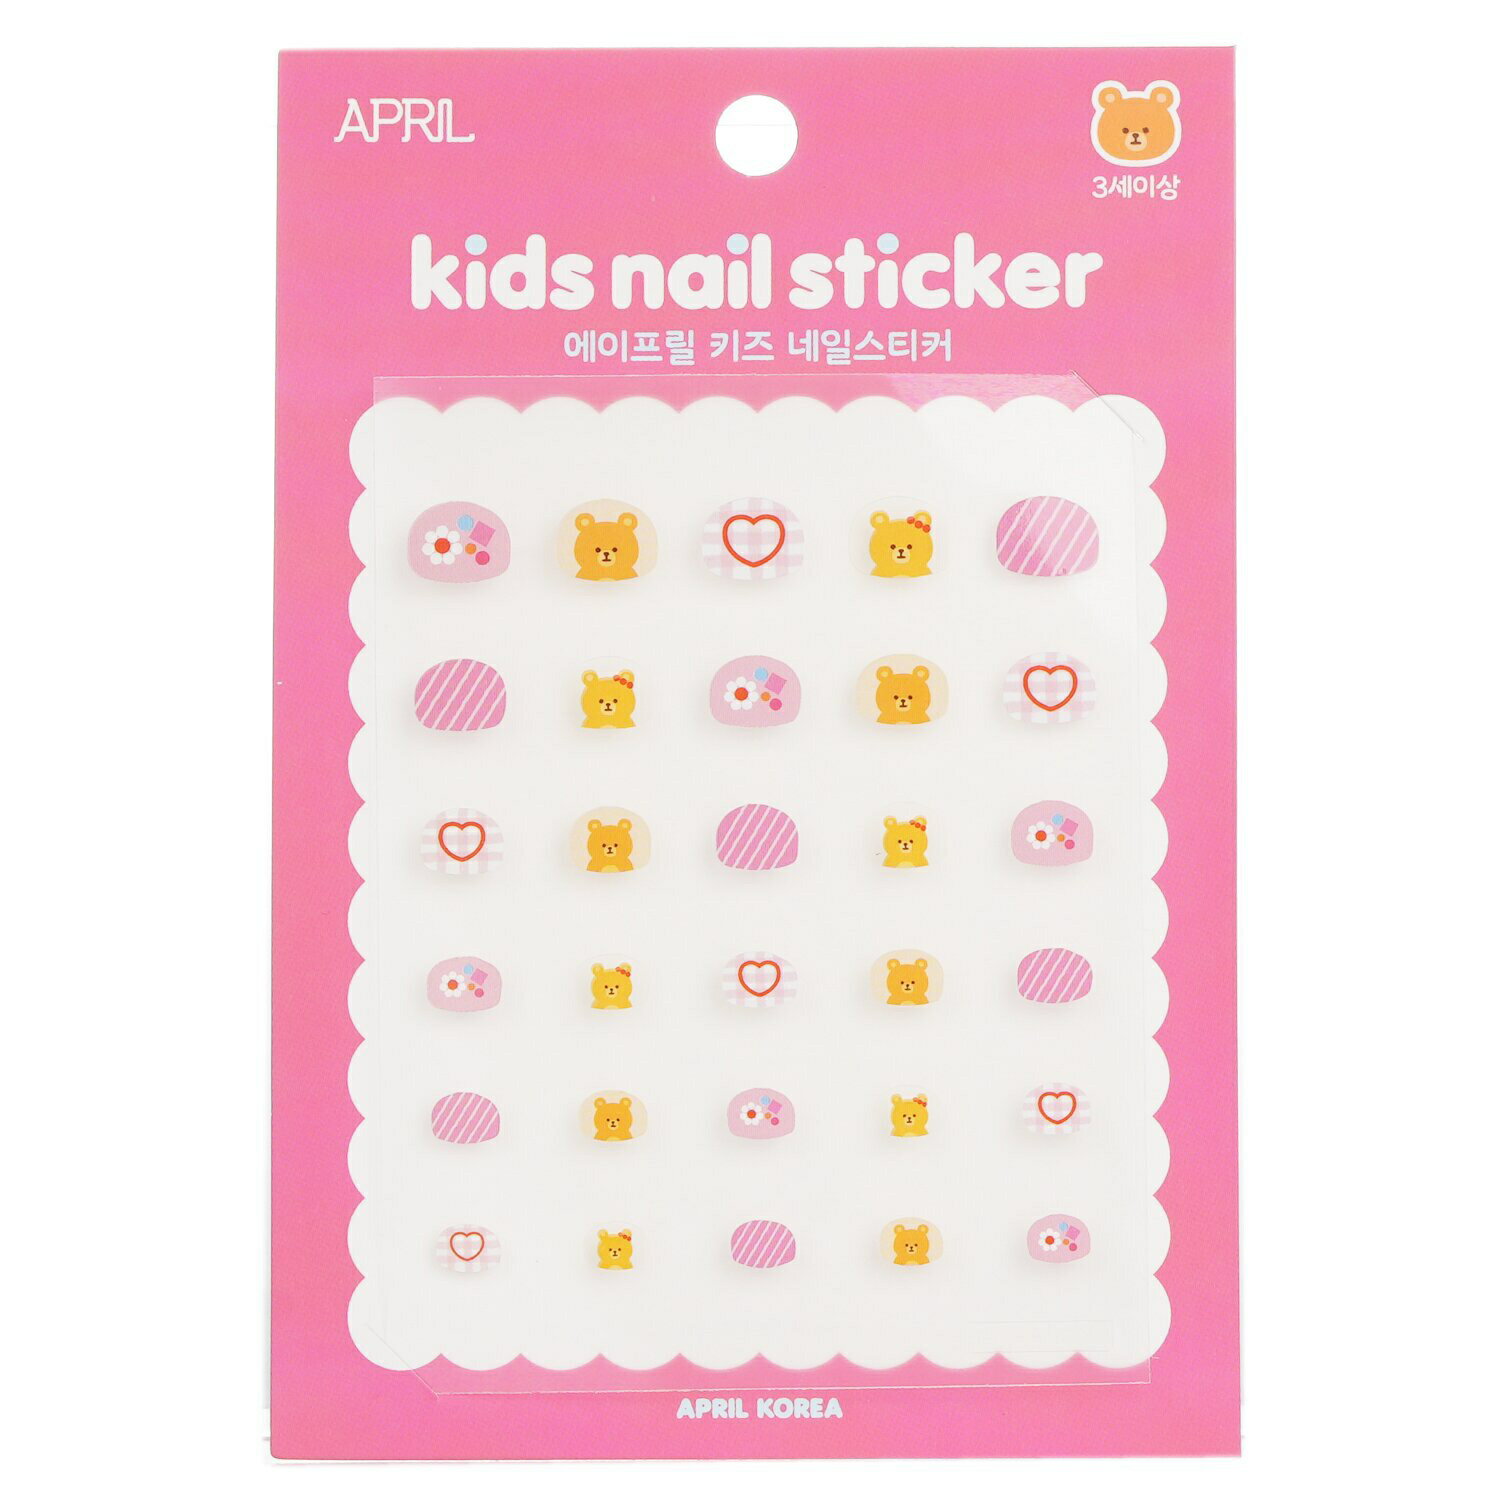 お得な「メイクセット＆コフレ」はこちら【新着コスメ】はこちらブランドApril Korea商品名April Kids Nail Sticker - # A012KApril Kids Nail Sticker - # A012K商品説明商品区分化粧品（海外製）内容量1pack原産国韓国輸入者本商品は個人輸入商品のため、購入者の方が輸入者となります。広告文責株式会社 via Design050-3189-0333品番281317BEAUTY LOVER 海外コスメ 楽天市場店海外コスメのビューティラバー。お得に楽しく美しく！人気の海外ブランドから定番まで、800以上のブランド取り扱い。20,000点以上のお求め安いアイテムを取揃える世界最大級のビューティー専門店。日本未上陸・限定商品など、おすすめのトレンドをおさえた、ランキング上位の人気アイテム多数。★ 大人の願いとお悩みをサポート年齢を重ねてもずっとキレイでいたい、毎日の美容と健康をサポートする、高品質でおしゃれなケアアイテムがきっと見つかります。20代、30代、40代、50代、60代、どの年代にもぴったりのセレクションです。★ 大切な女性（妻、嫁、彼女）へのプレゼントに誕生日プレゼント、クリスマス、ホワイトデー、母の日のギフトに仲良しな女友達へのサプライズギフトに結婚祝い、成人祝い、就職祝いなどの記念の贈り物におすすめ＊当店でご購入された商品は、原則として、「個人輸入」としての取り扱いになり、全て香港からお客様のもとへ直送されます。＊個人輸入される商品は、すべてご注文者自身の「個人使用・個人消費」が前提となりますので、ご注文された商品を第三者へ譲渡・転売することは法律で禁止されております。＊ご購入品は「個人輸入」となり、企業名及び住所への発送はできません。個人名、個人宅への発送となります。AprilKorea アクセサリー で探すアクセサリー で探すAprilKorea で探すブランドApril Korea商品名April Kids Nail Sticker - # A012KApril Kids Nail Sticker - # A012K商品説明商品区分化粧品（海外製）内容量1pack原産国韓国輸入者本商品は個人輸入商品のため、購入者の方が輸入者となります。広告文責株式会社 via Design050-3189-0333品番281317